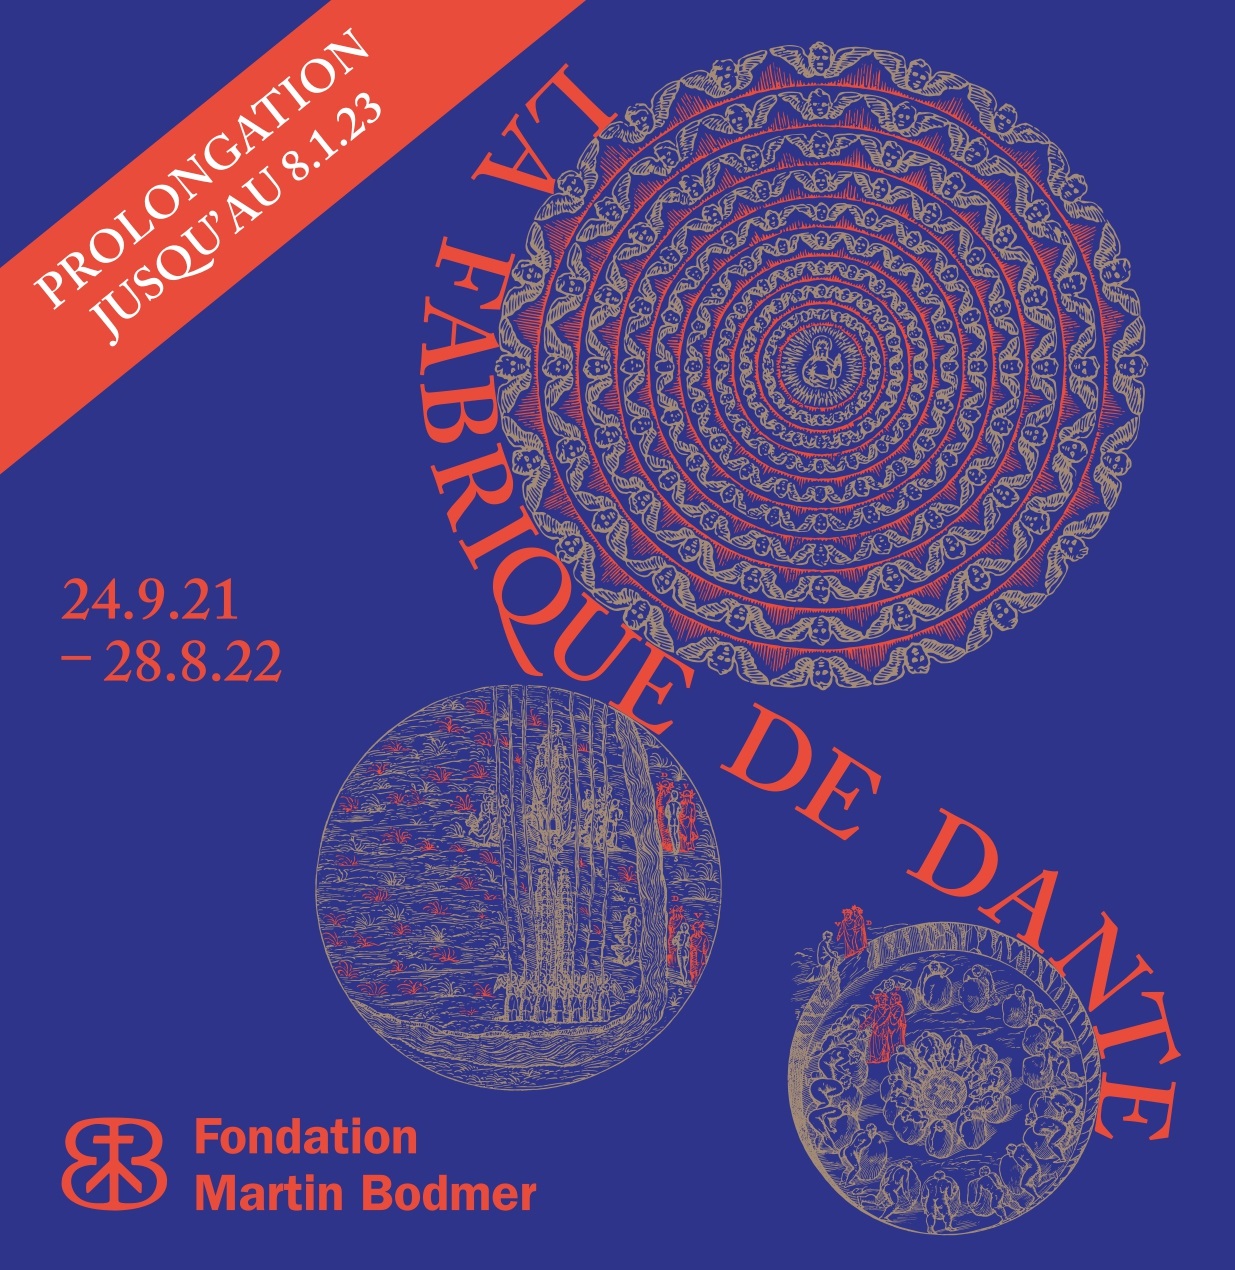 Exposición "La fabrique de Dante" en la Fondation Martin Bodmer de Ginebra | Tu Gran Viaje